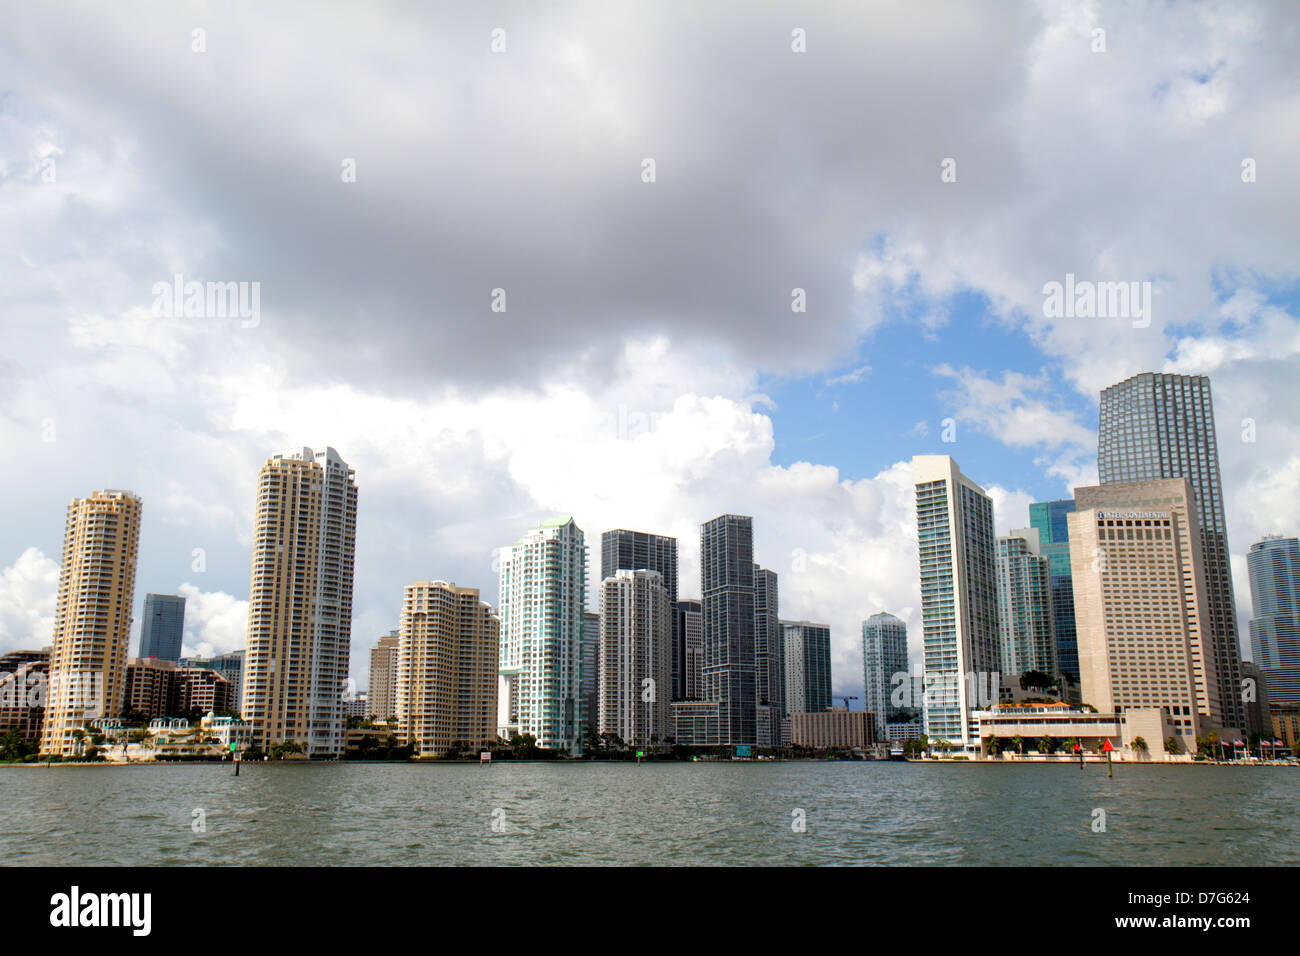 Miami Florida, Skyline der Innenstadt, Brickell Financial District, Wasserhimmel an der Biscayne Bay, Wolken, Bürogebäude, Skyline der Stadt, Hochhaus-Skyscr Stockfoto